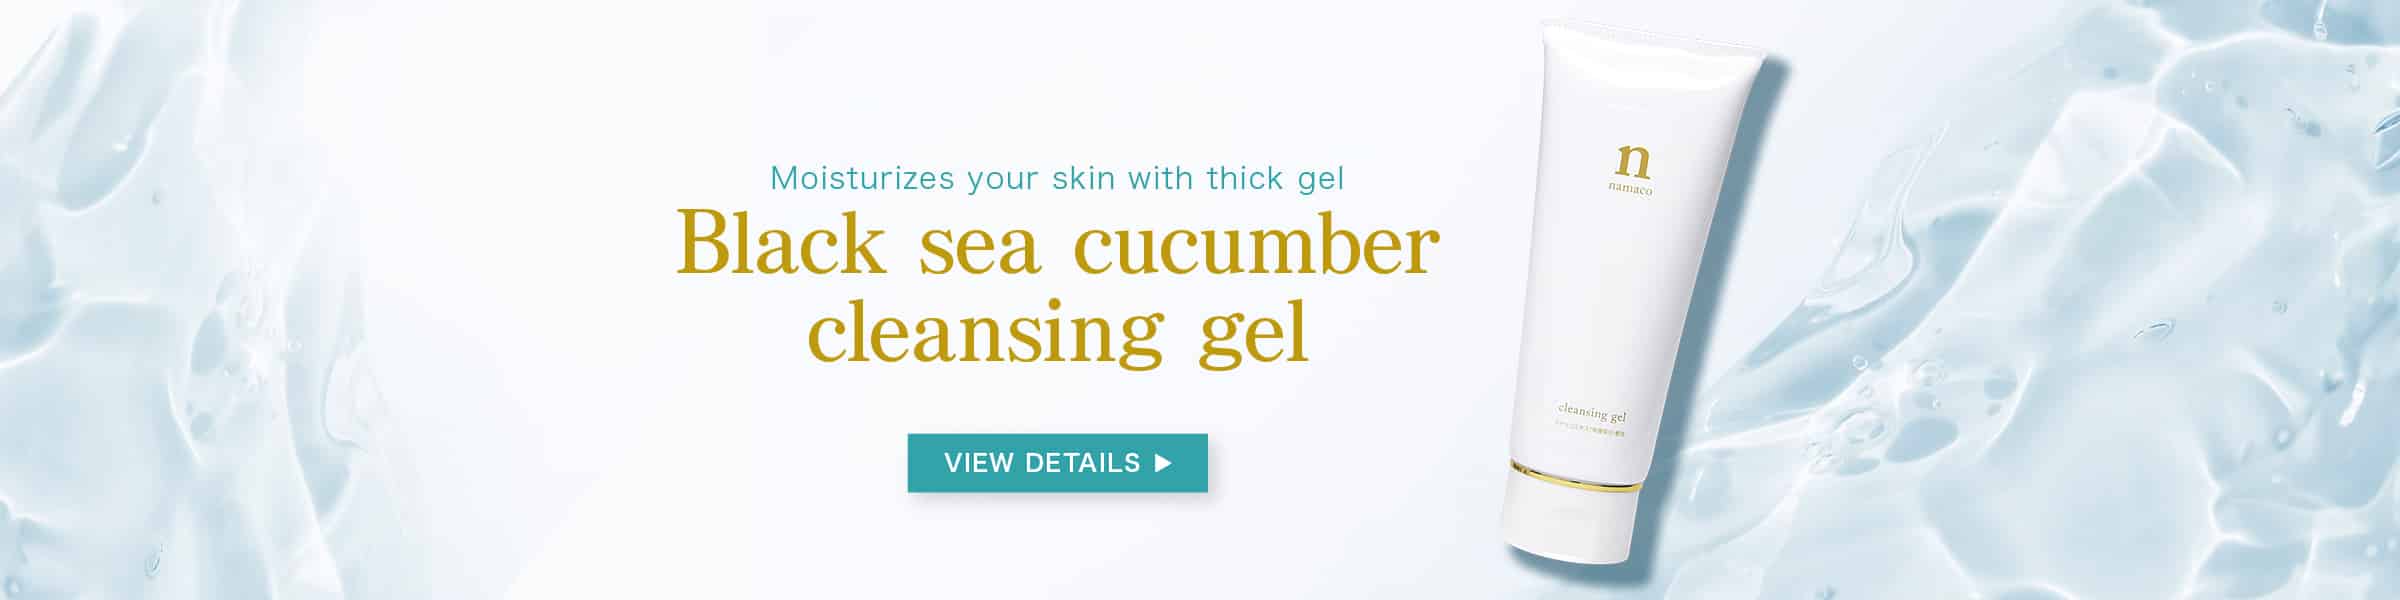 Black sea cucumber cleansing gel